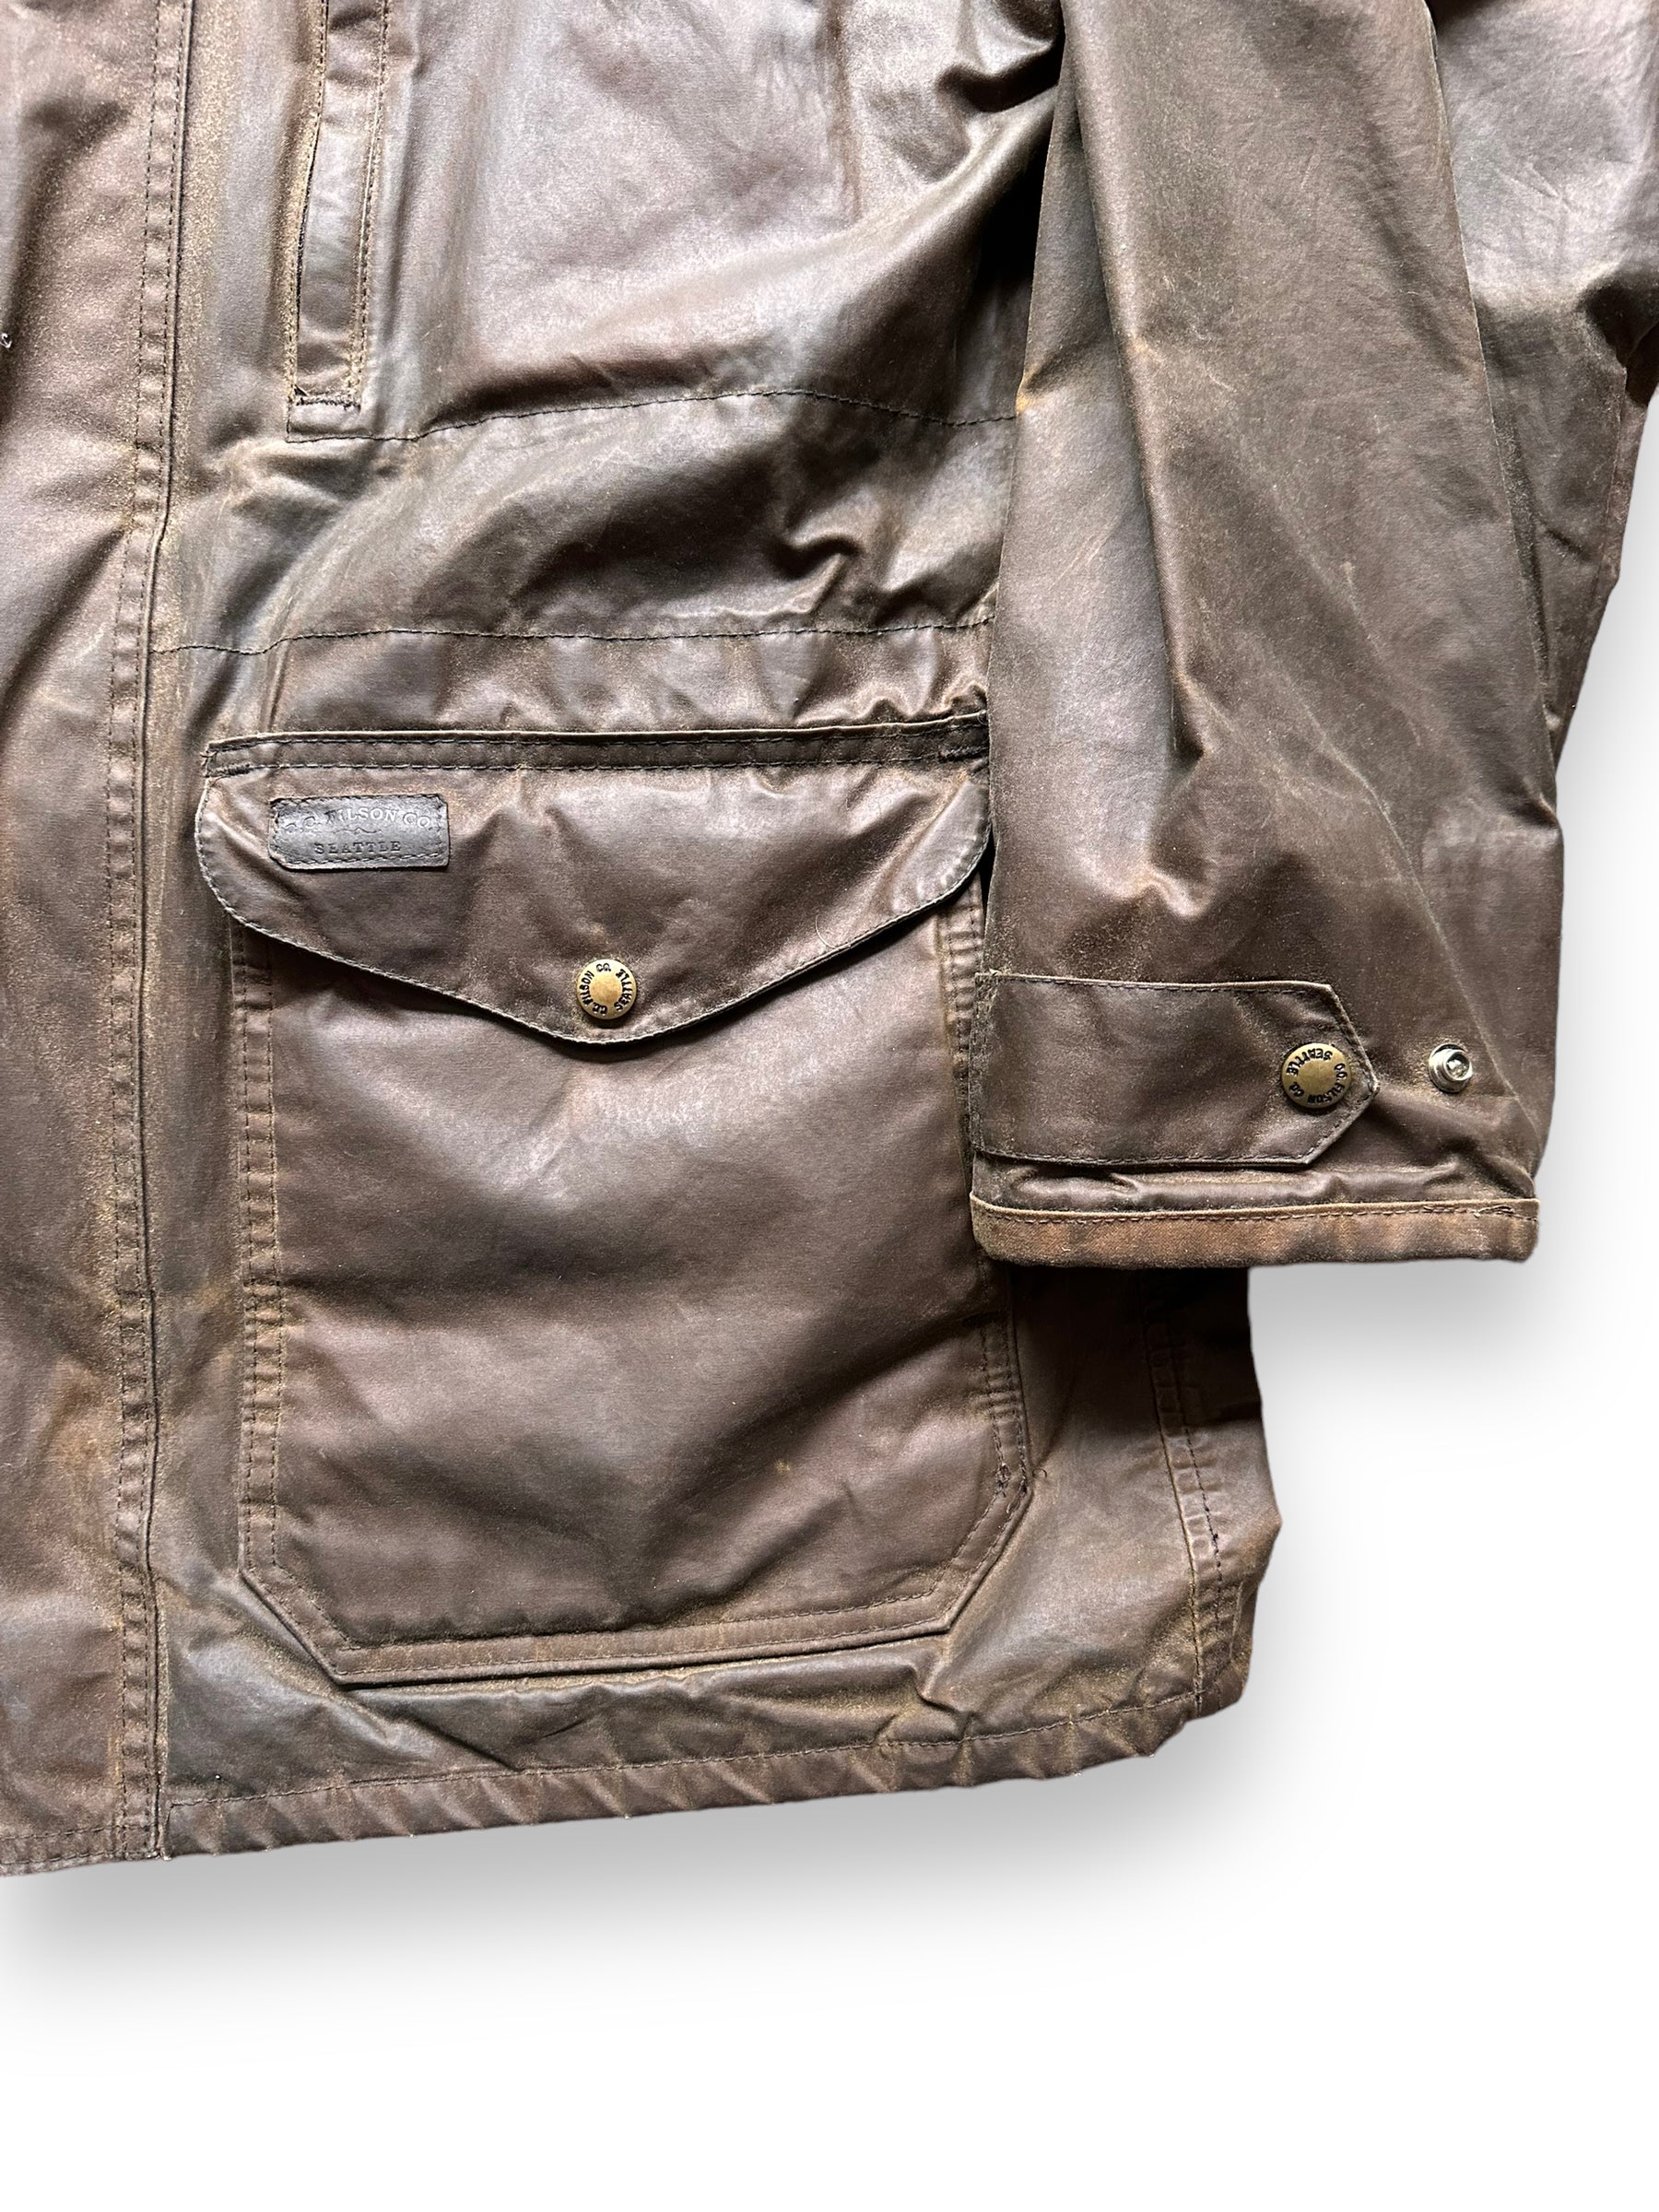 Filson wax jacket for Sale in Renton, WA - OfferUp